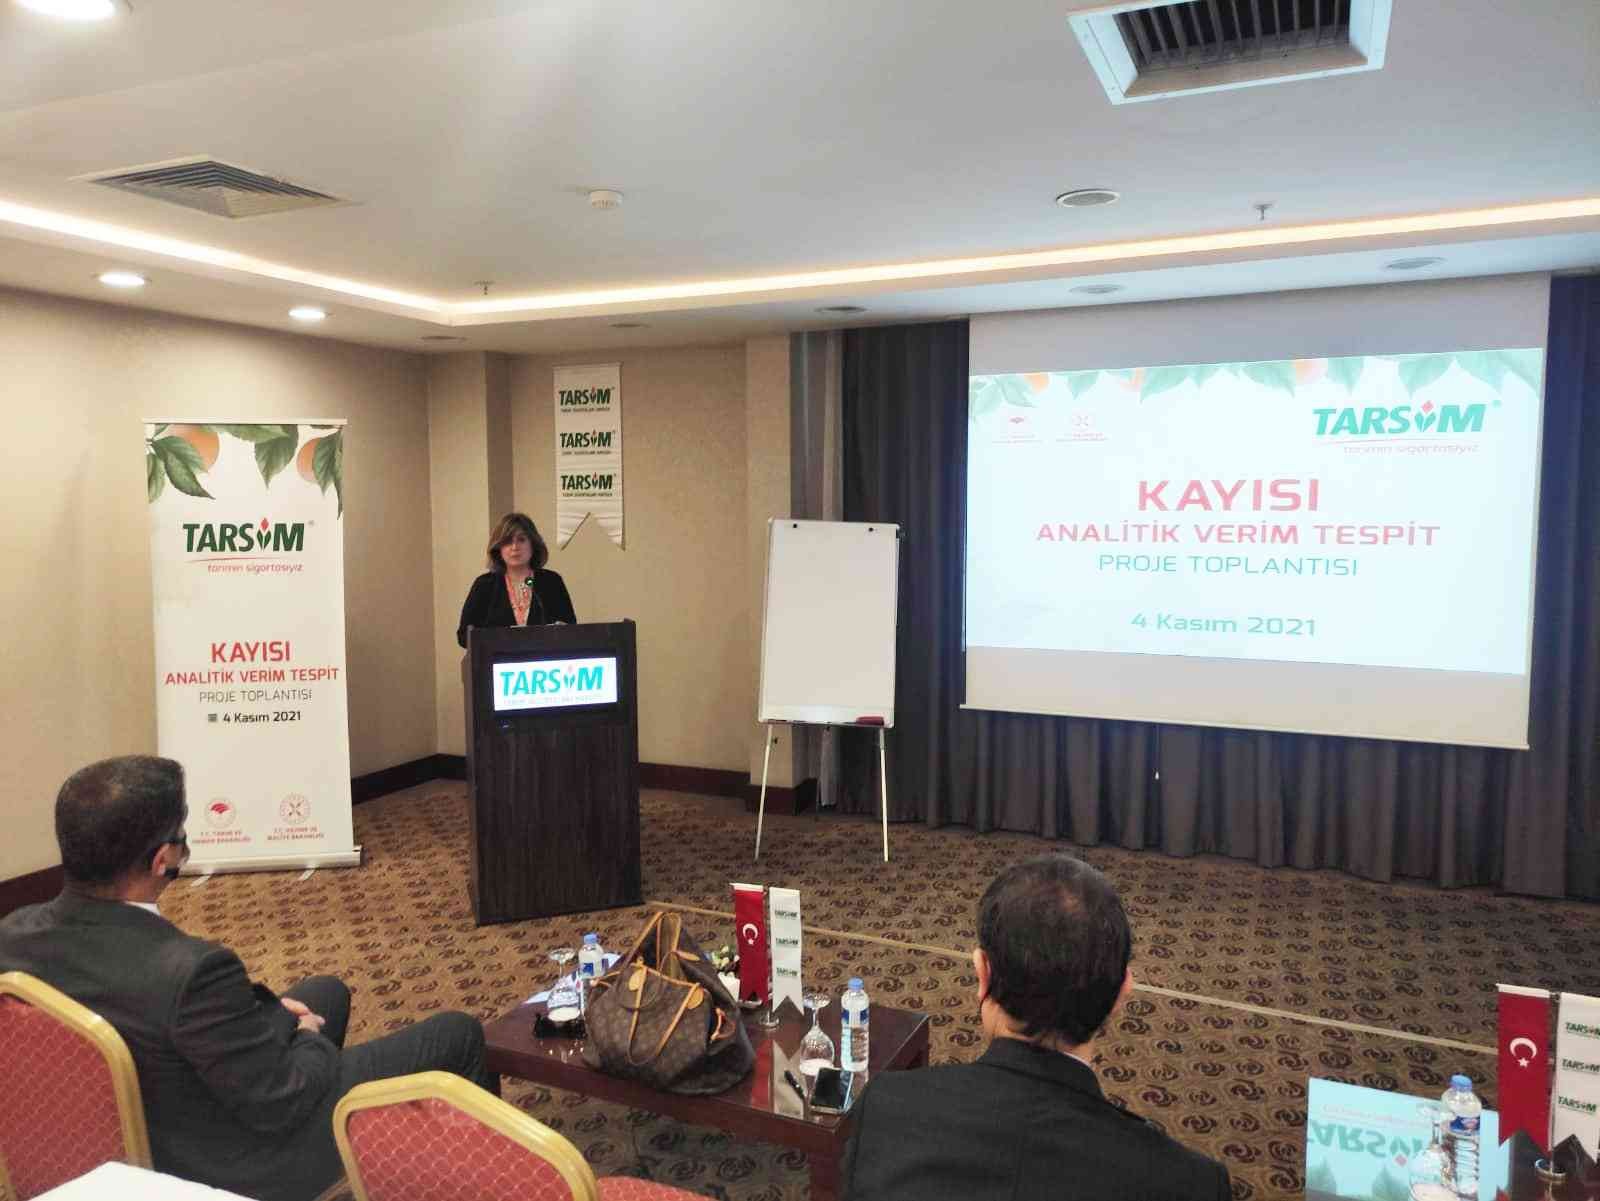 Kayısı Analitik Verim Tespit Proje Toplantısı Malatya’da gerçekleştirildi #malatya